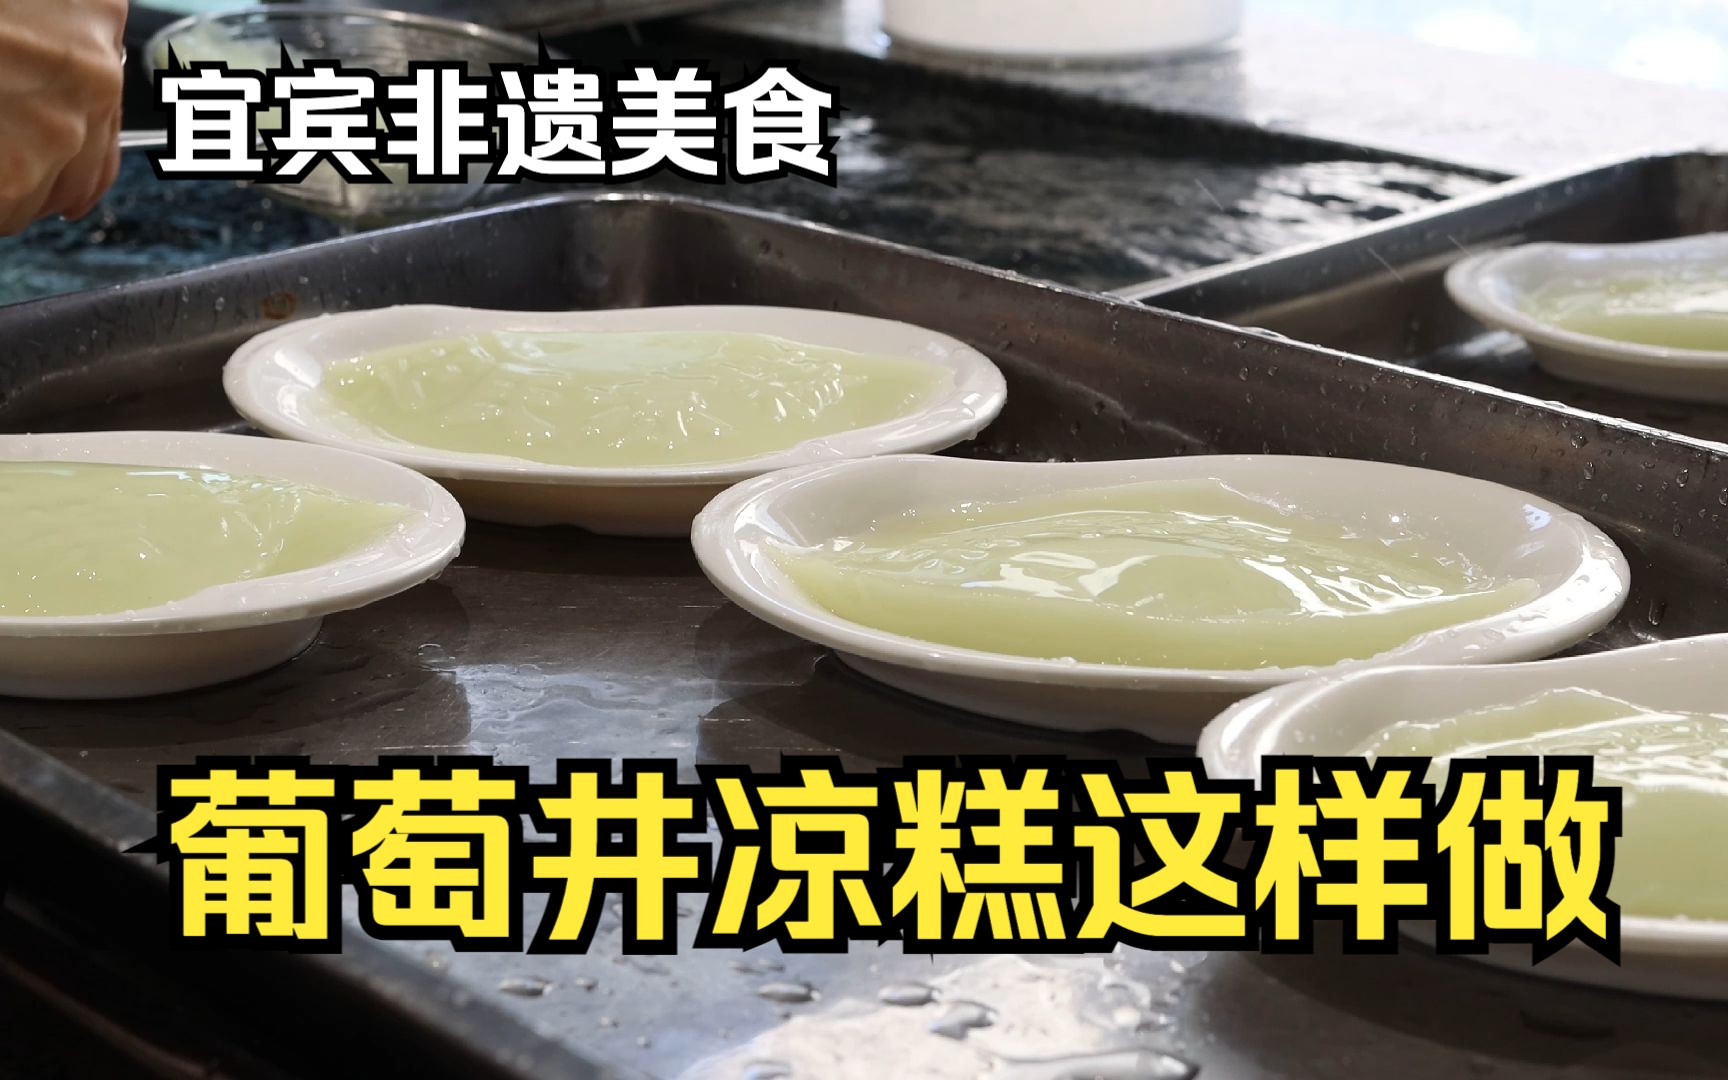 凉糕是四川省著名的汉族小吃，属于川菜系。… - 堆糖，美图壁纸兴趣社区